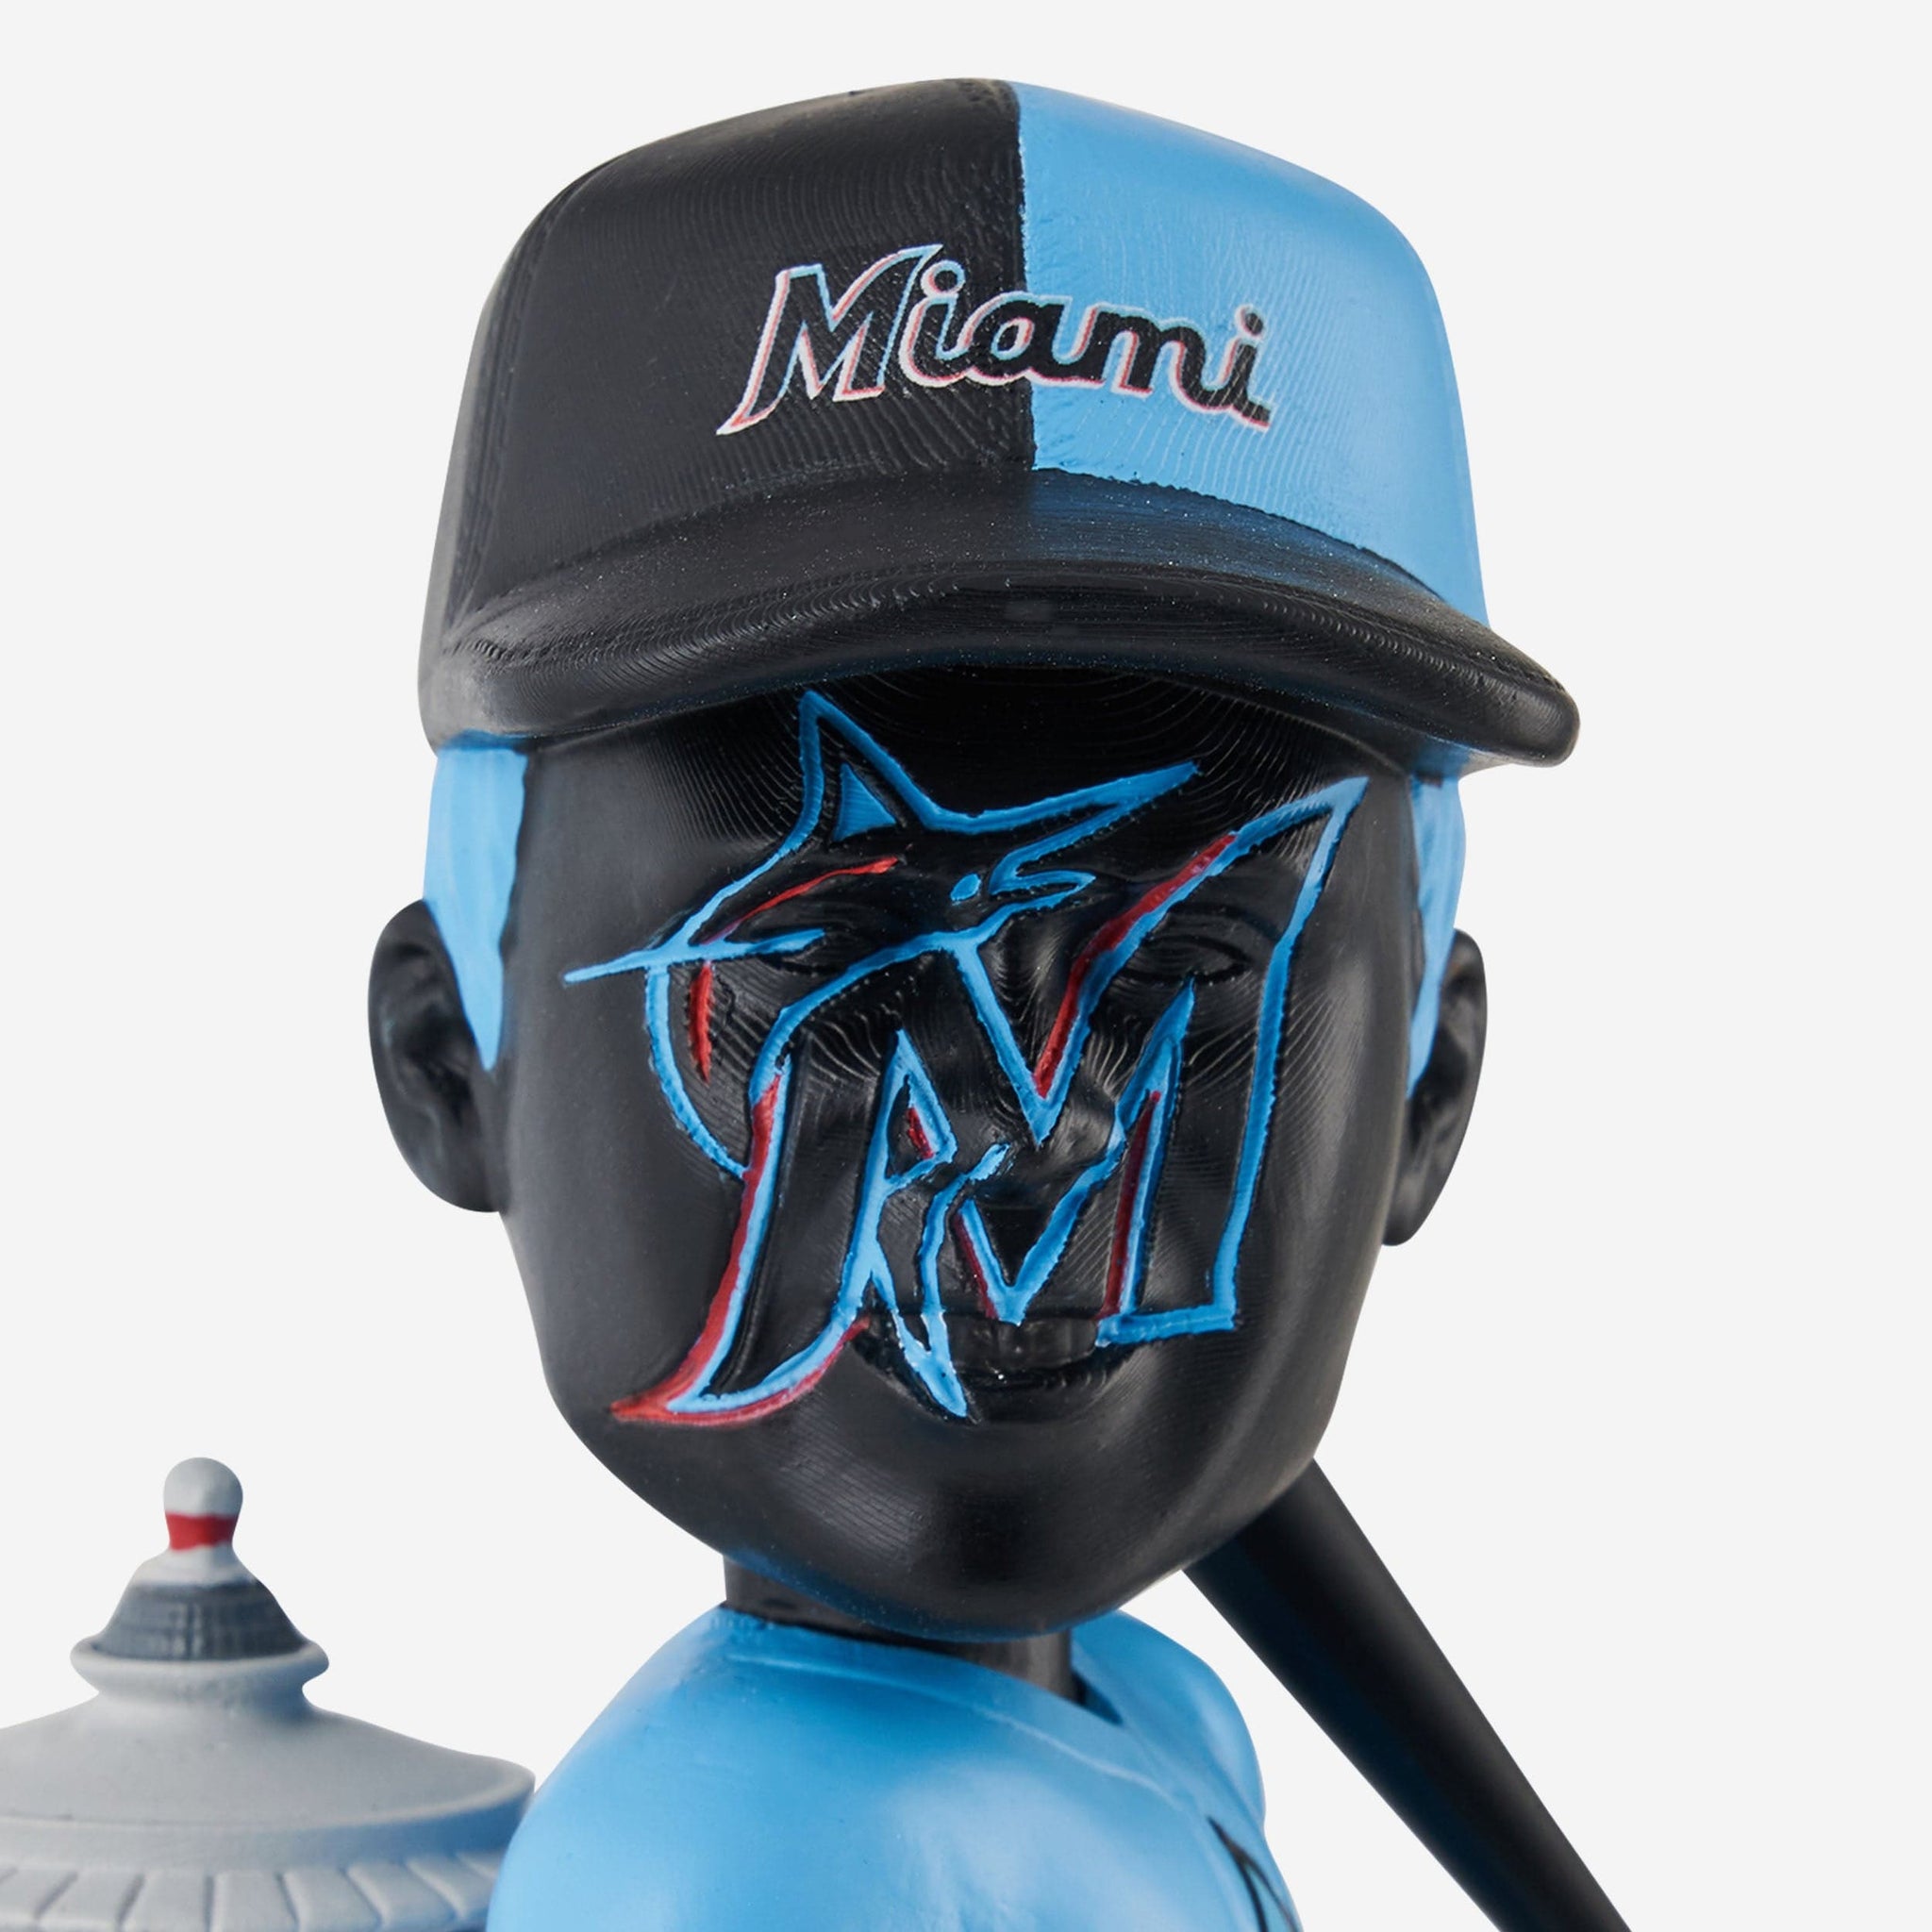 Marlins Baseball Sugar Kings Mascot - Miami Marlins Baseball Team - Magnet